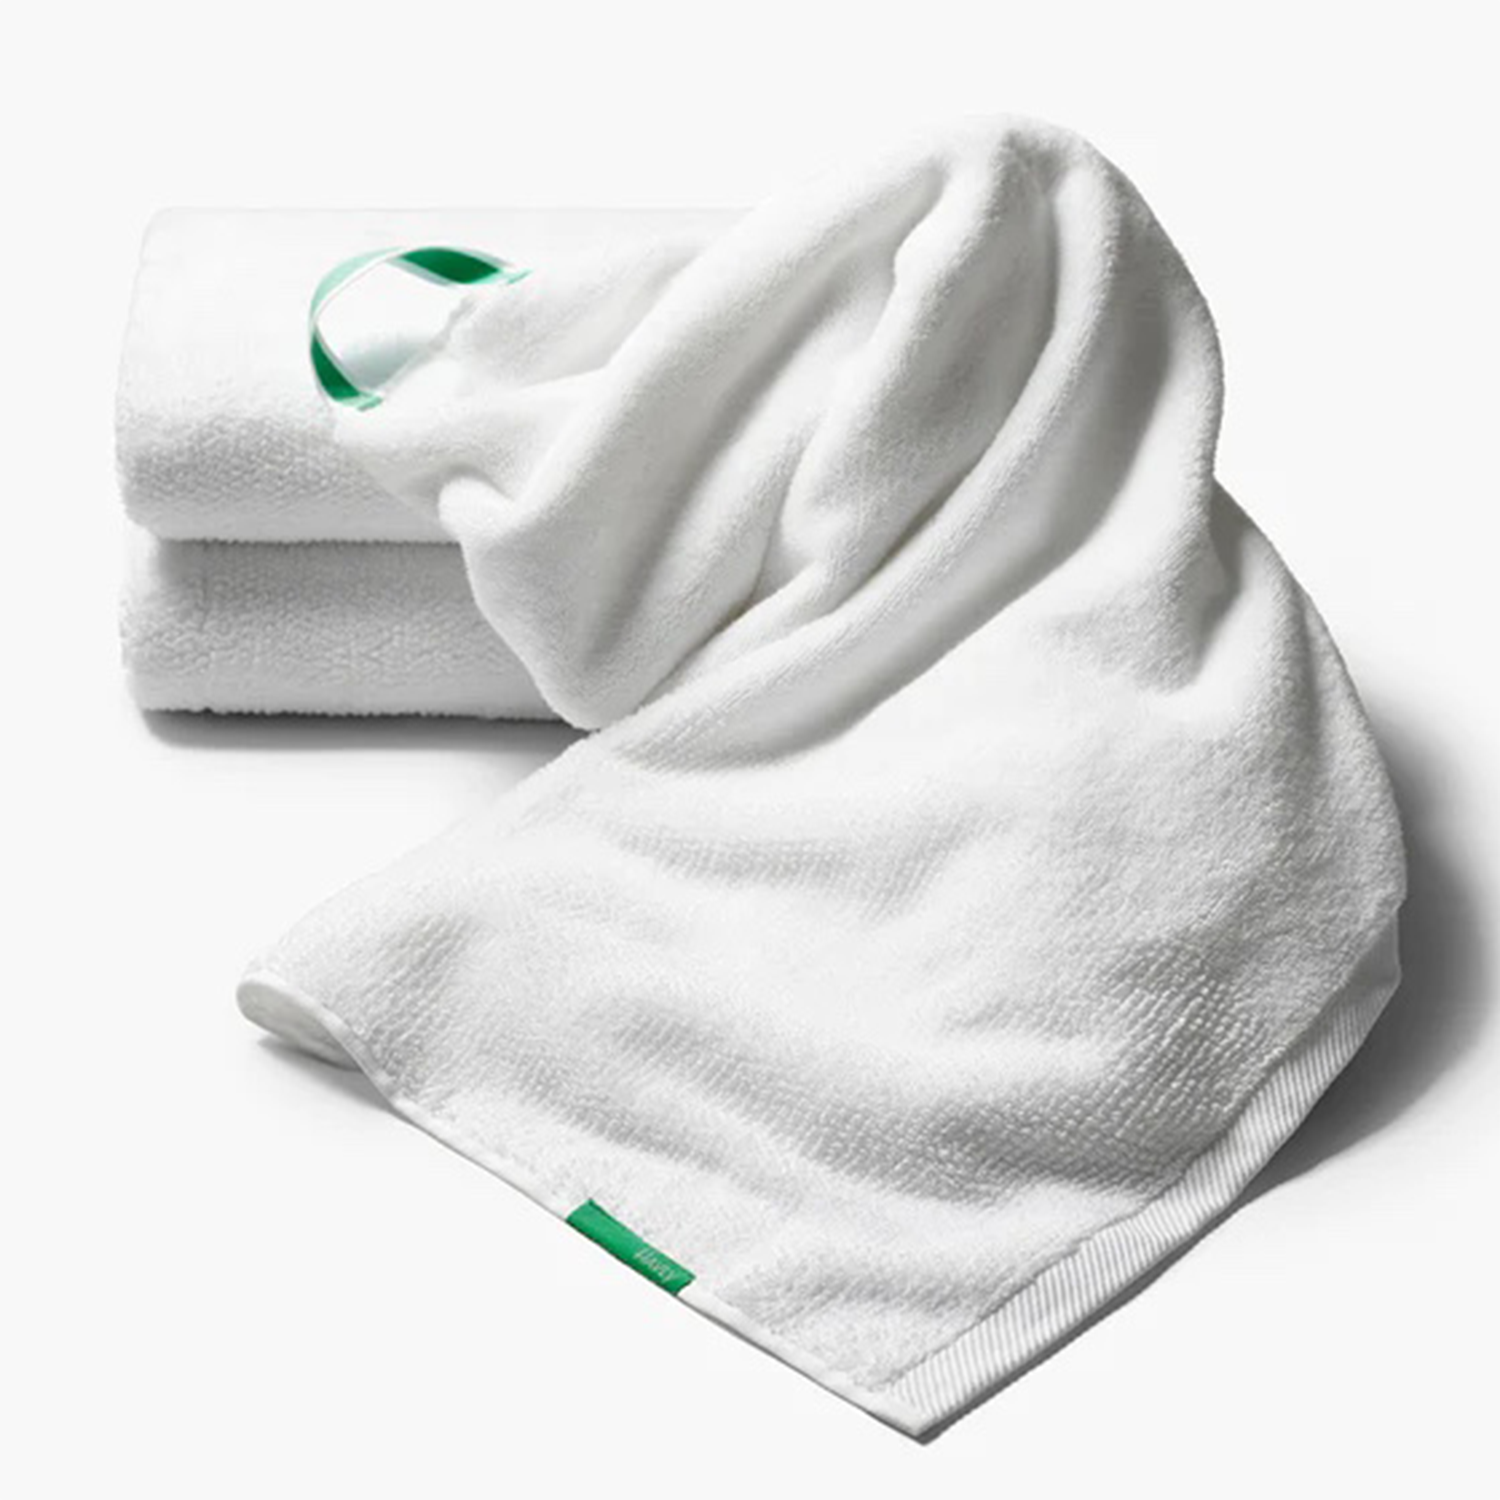 Havly Bath Towel in Emerald City